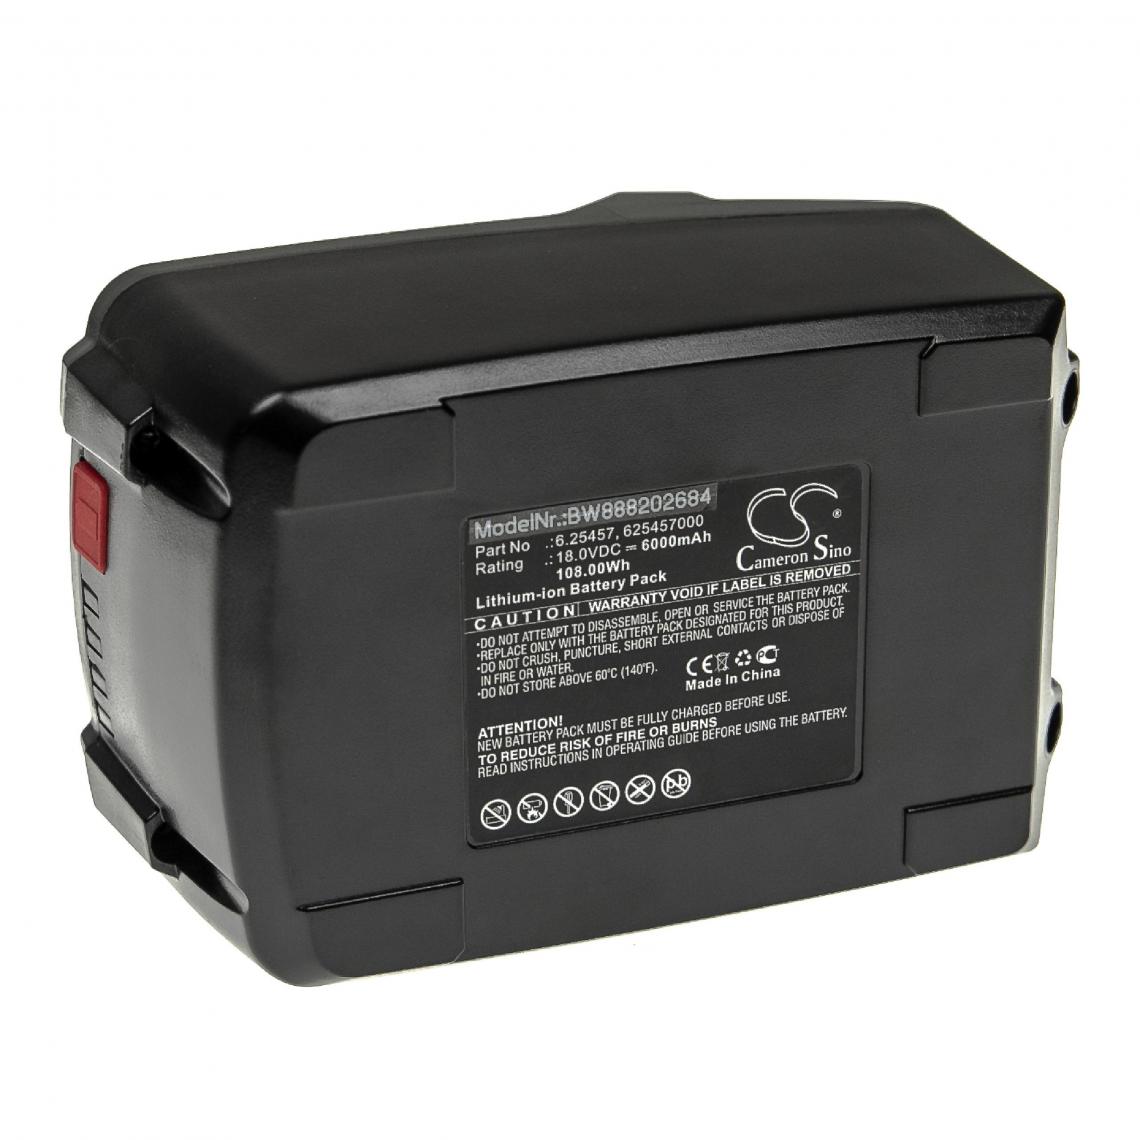 Vhbw - vhbw Batterie compatible avec Rokamat vibrateur à béton, Dragonfly, Filzer, FOX, WDVS outil électrique (6000mAh Li-ion 18 V) - Autre appareil de mesure